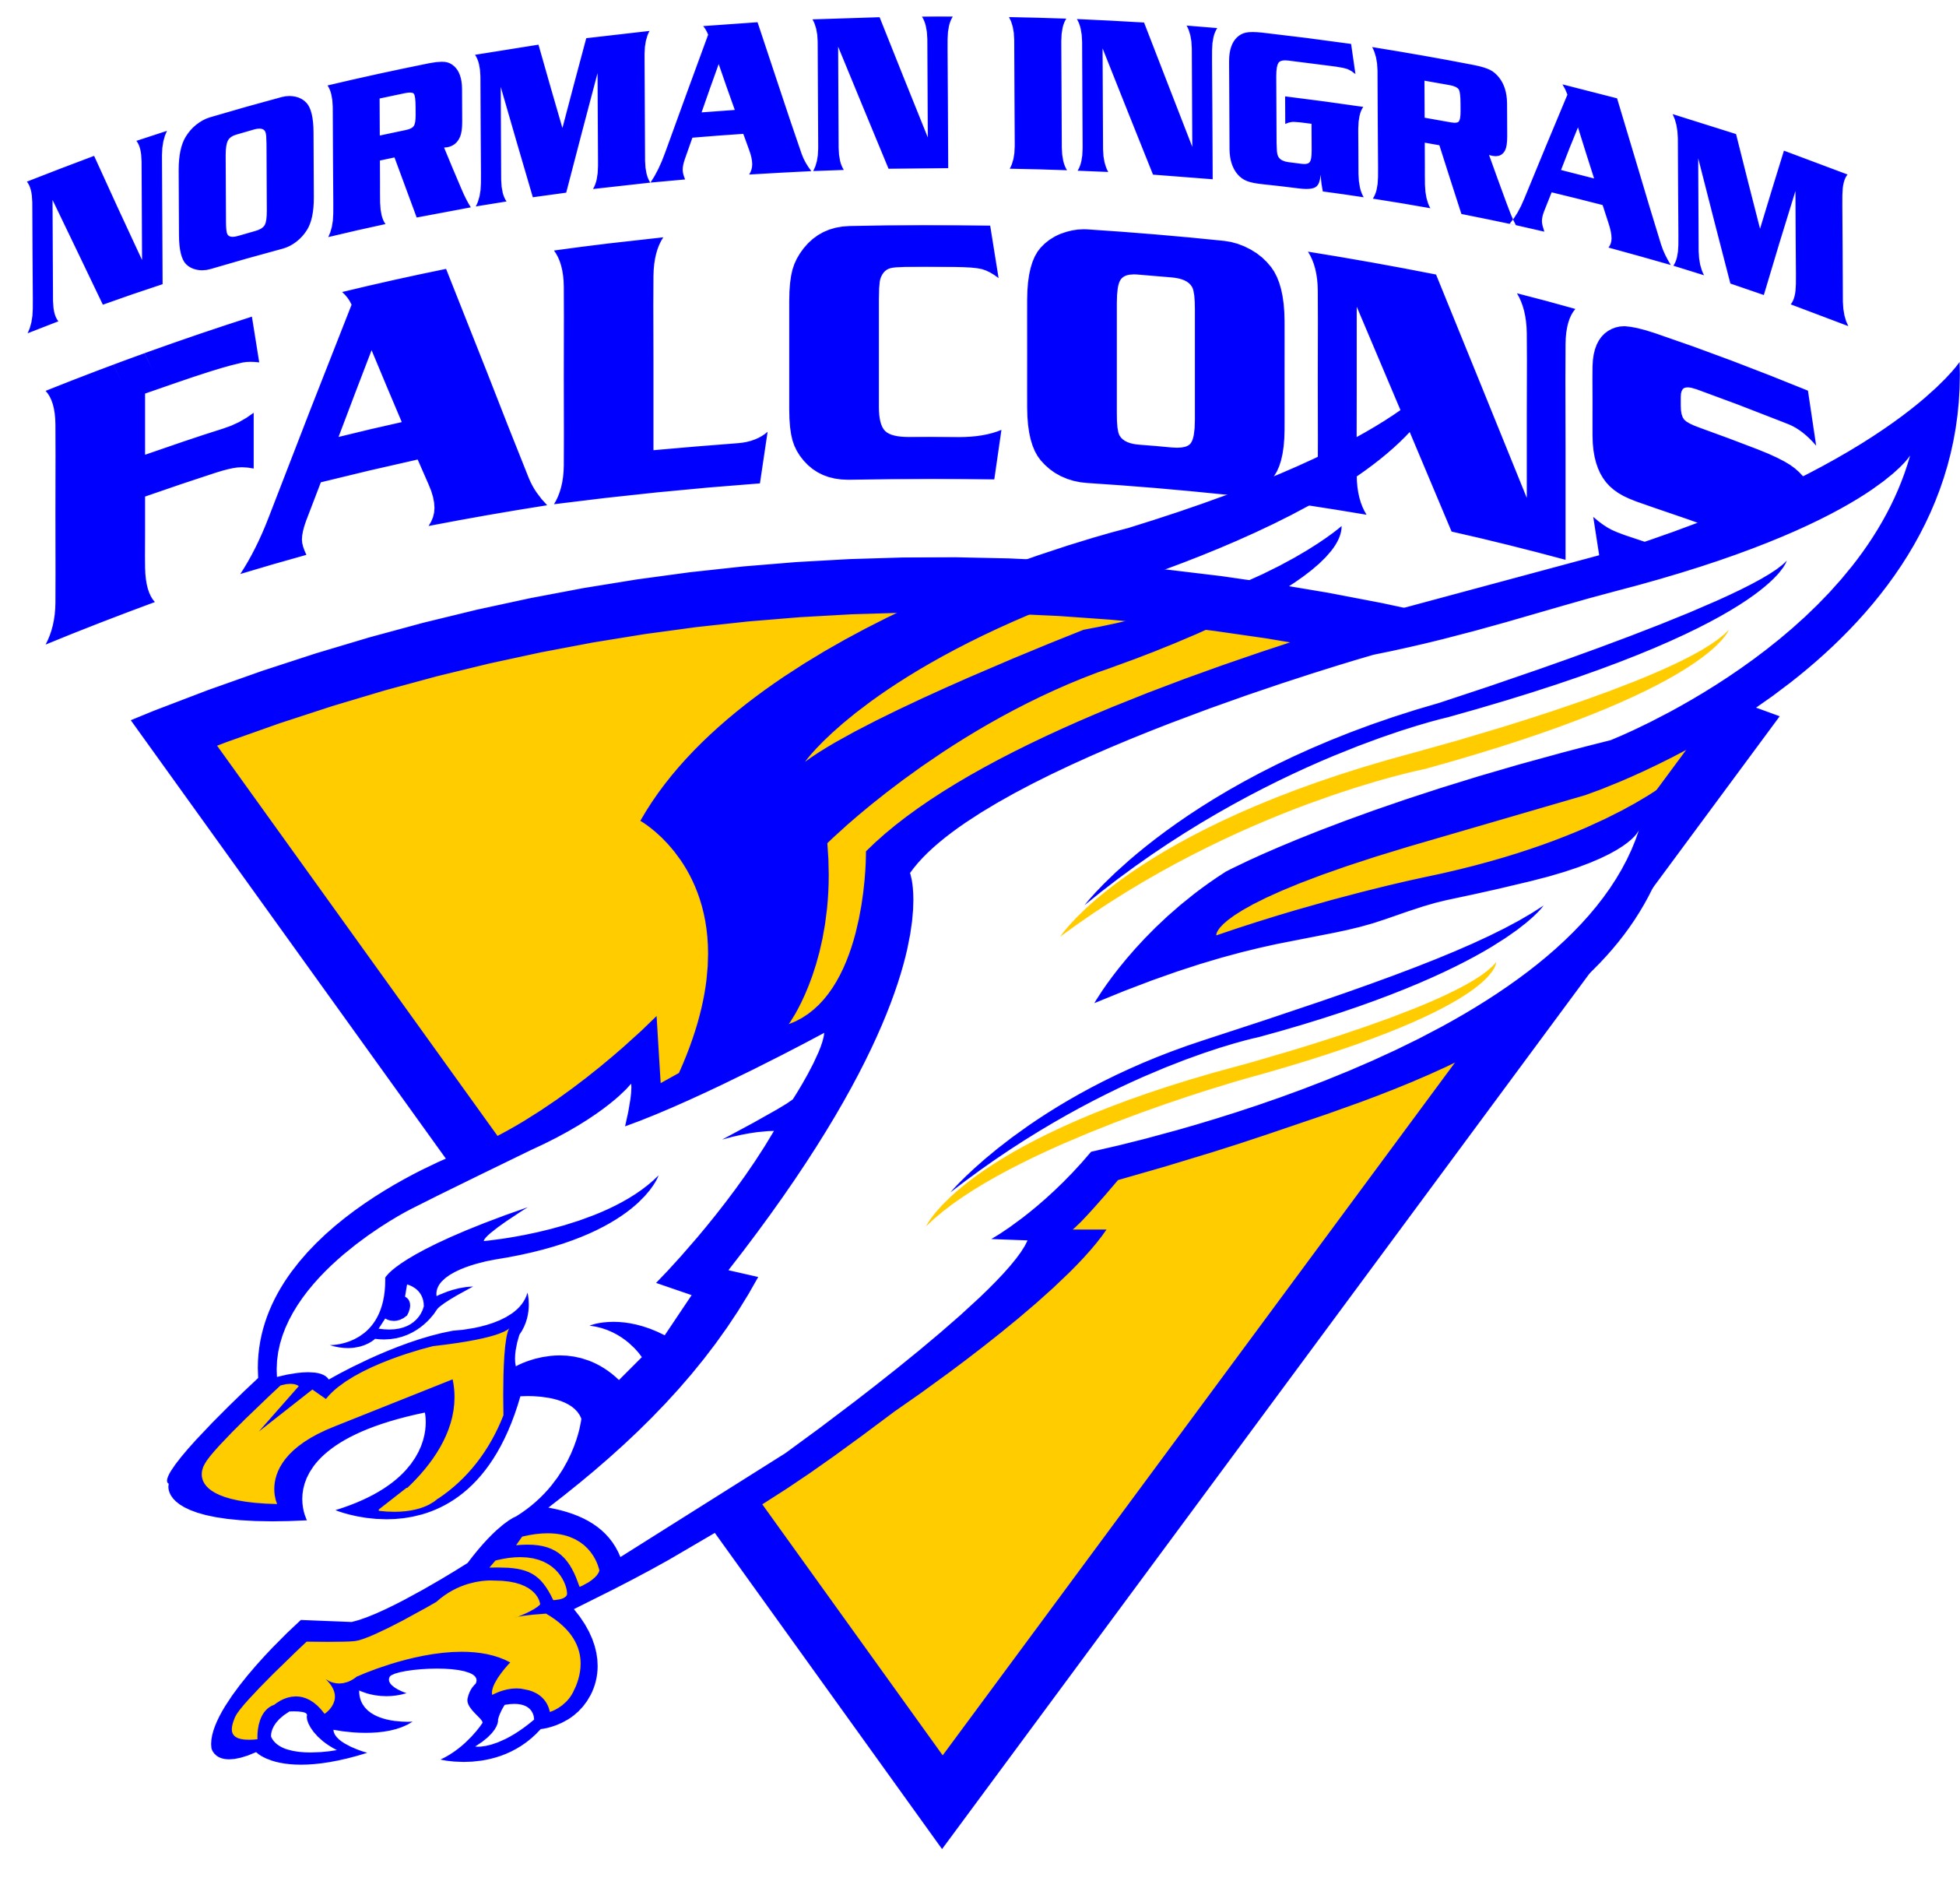 Norman Ingram Falcons